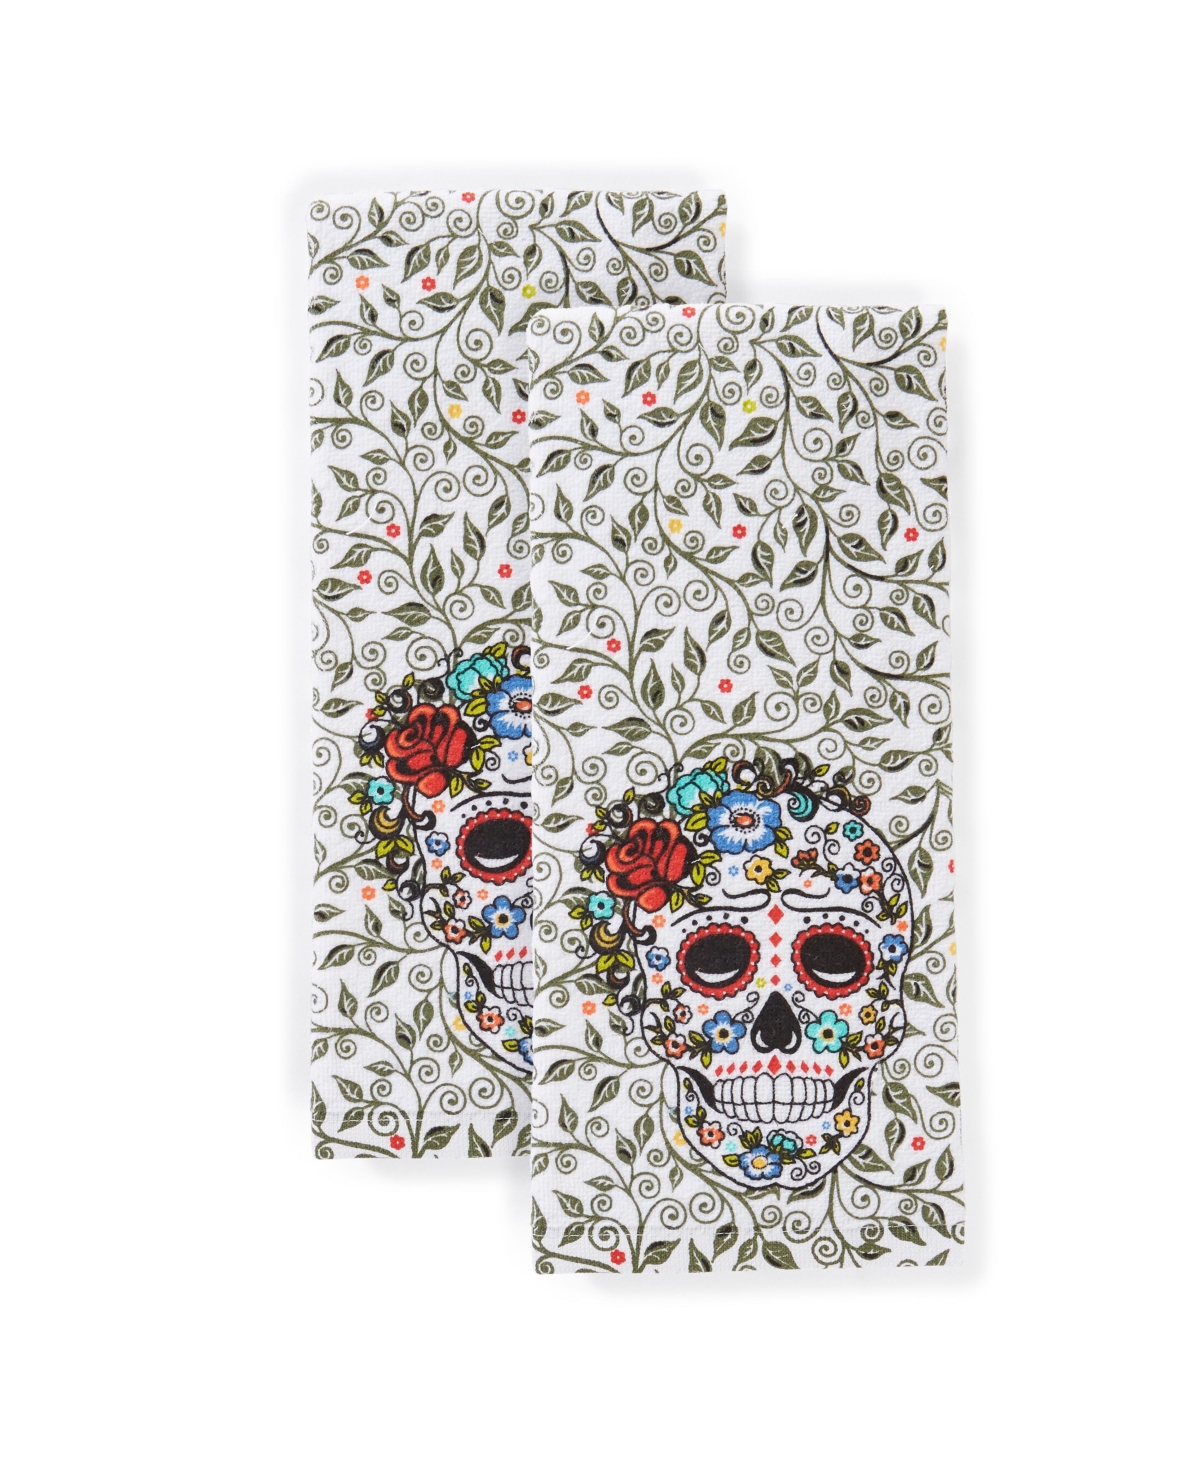 Skull & Vine Kitchen Towel, Set of 2 - Multi-color